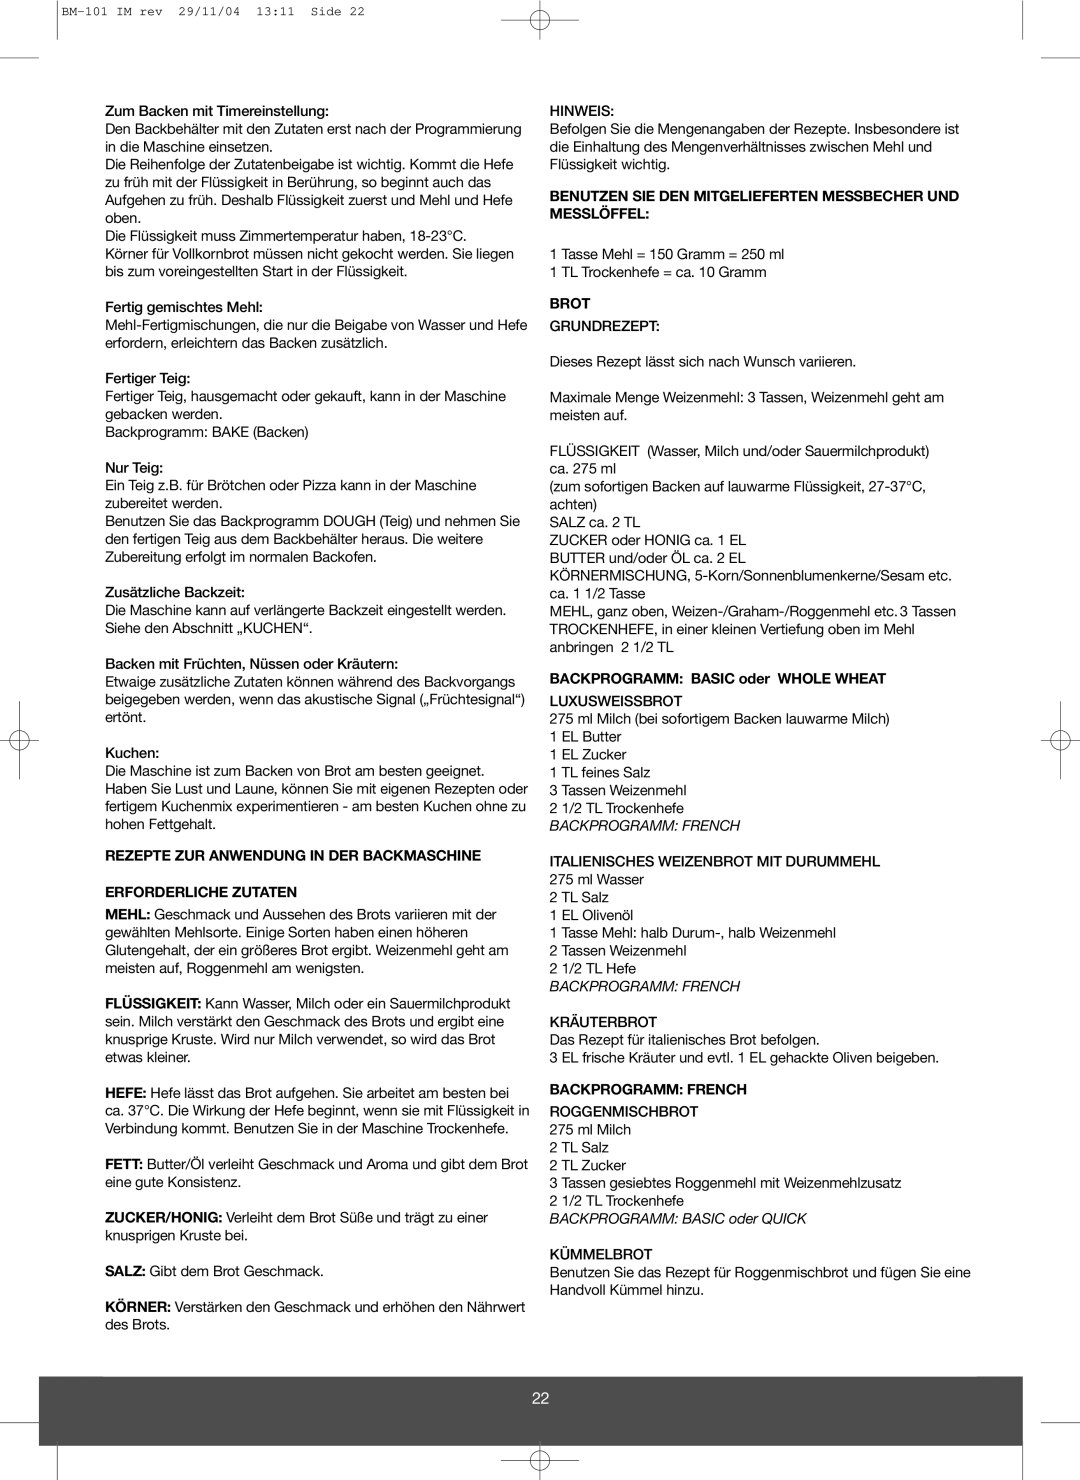 Melissa 643-032 manual Rezepte Zur Anwendung In Der Backmaschine, Erforderliche Zutaten, Brot, Backprogramm French 